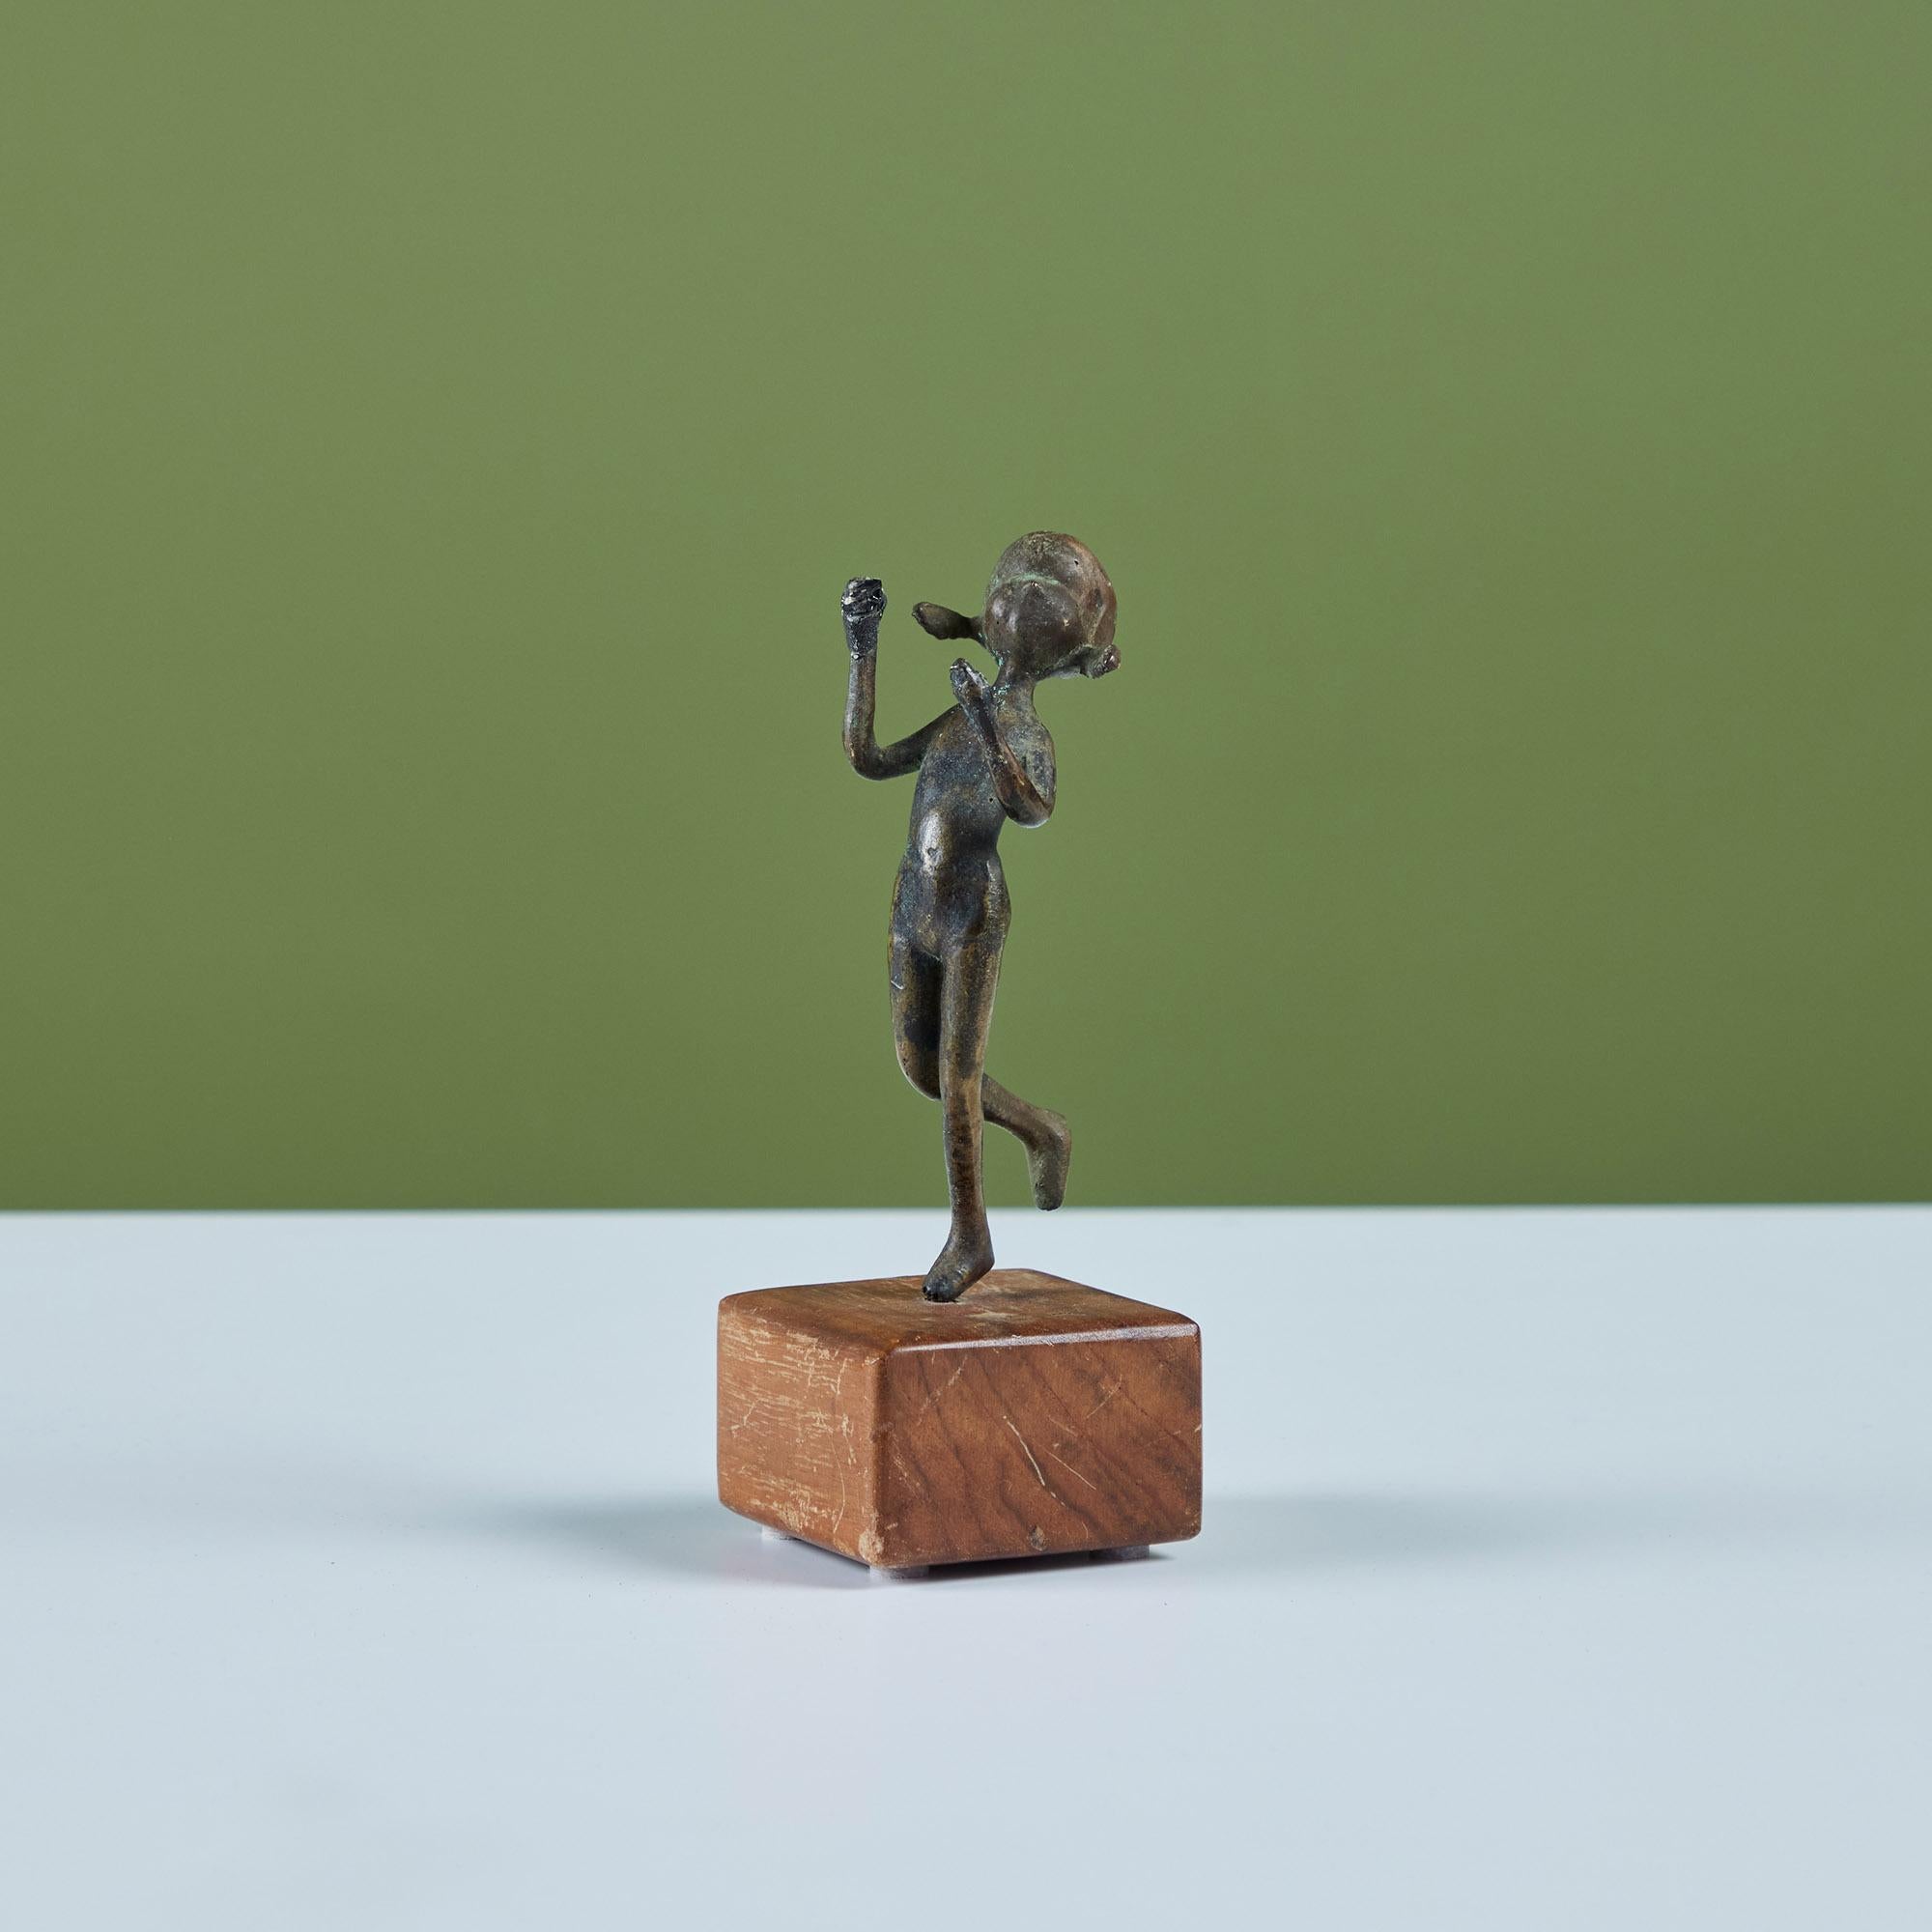 Sculpture en bronze coulé d'un enfant avec des nattes montée sur une base en bois.

Dimensions
2,5